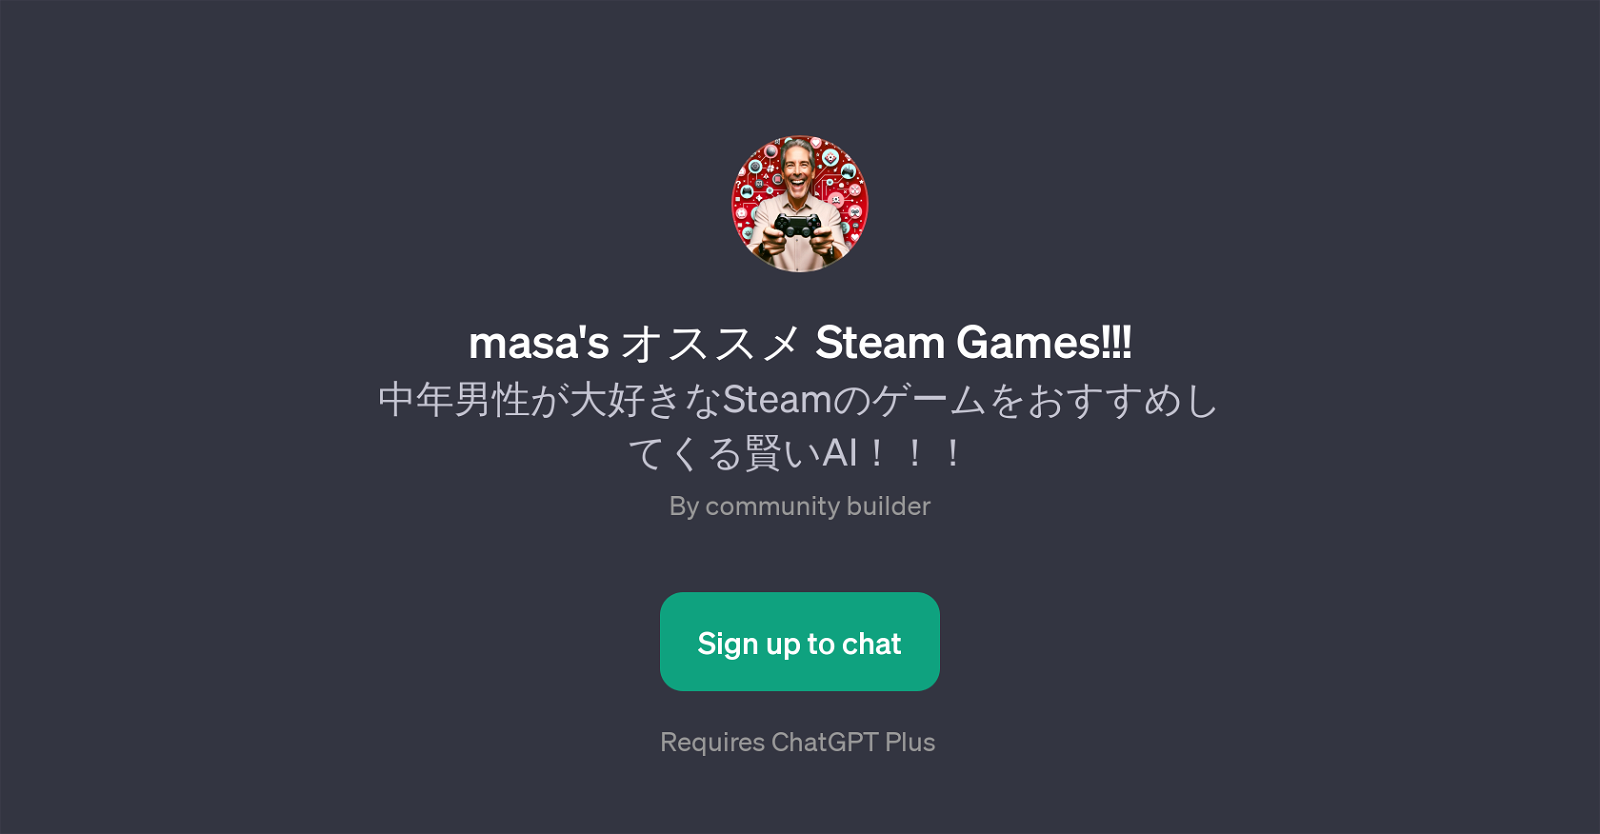 masa's  Steam Games website